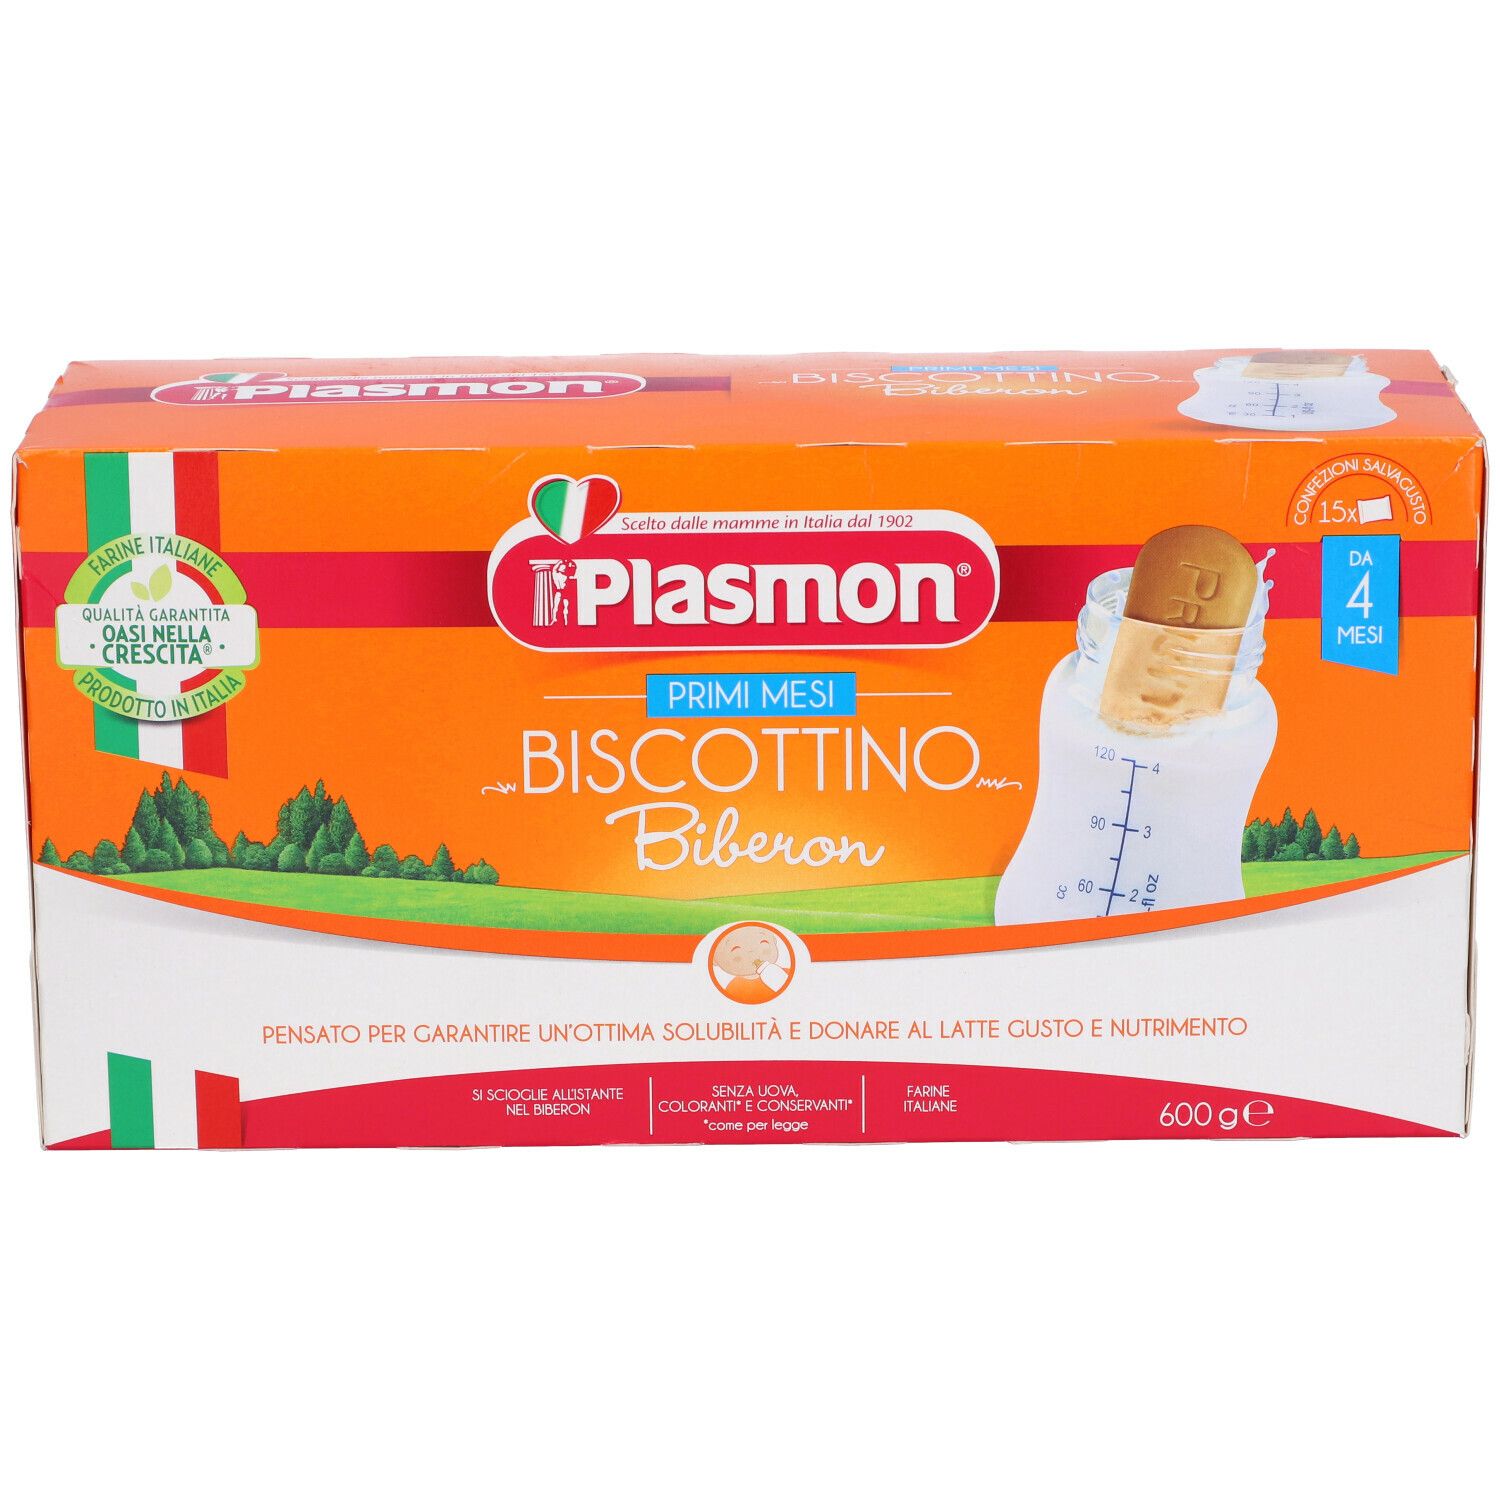 PLASMON BISCOTTI BIBERON 600 G 974036131 - Farmavola